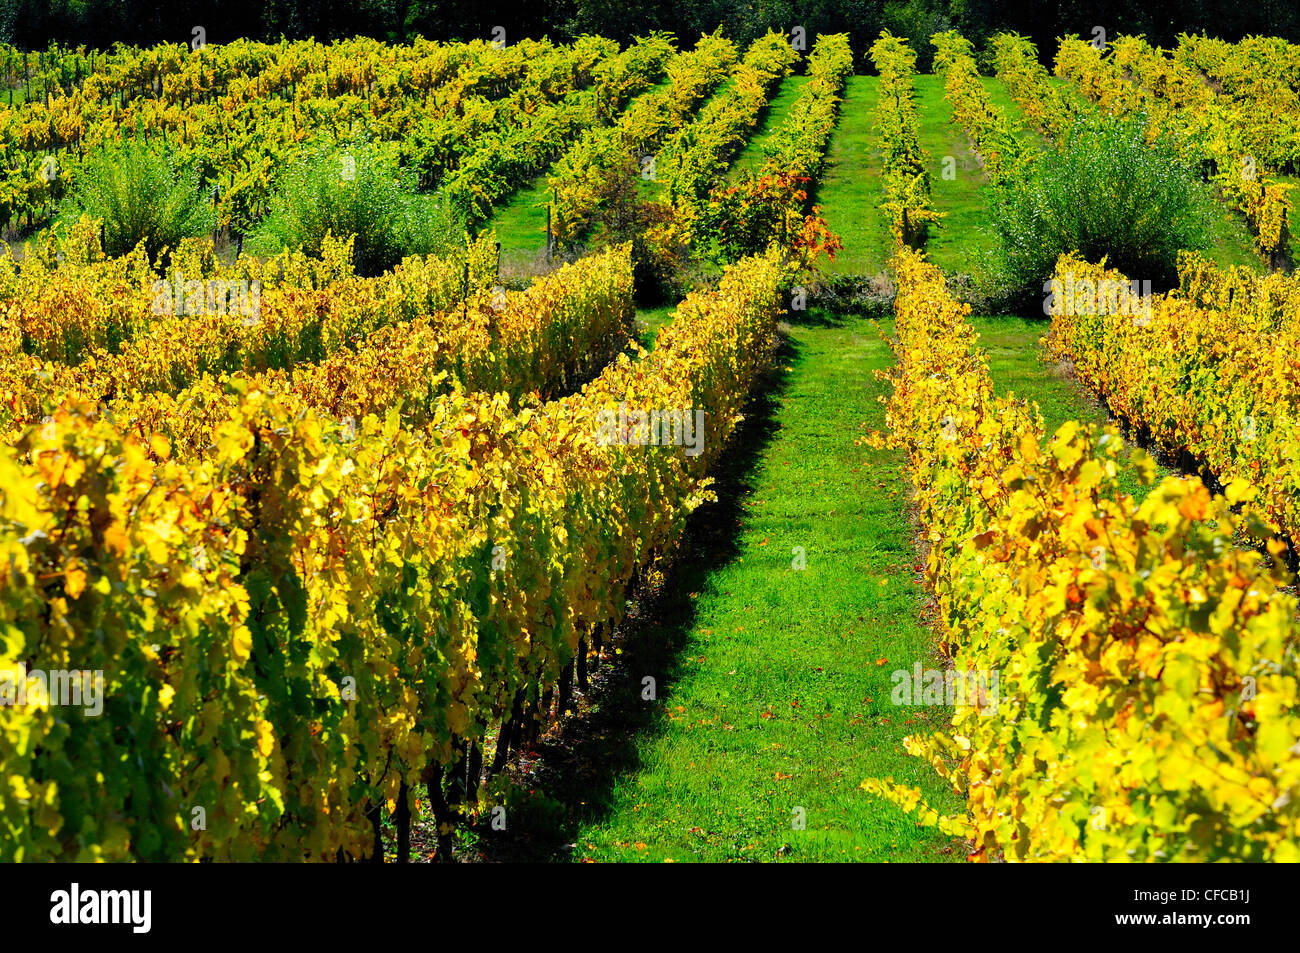 La couleur de l'automne et de vignobles dans la région de vignoble à Glenora, près de Duncan, Colombie-Britannique, Canada Banque D'Images